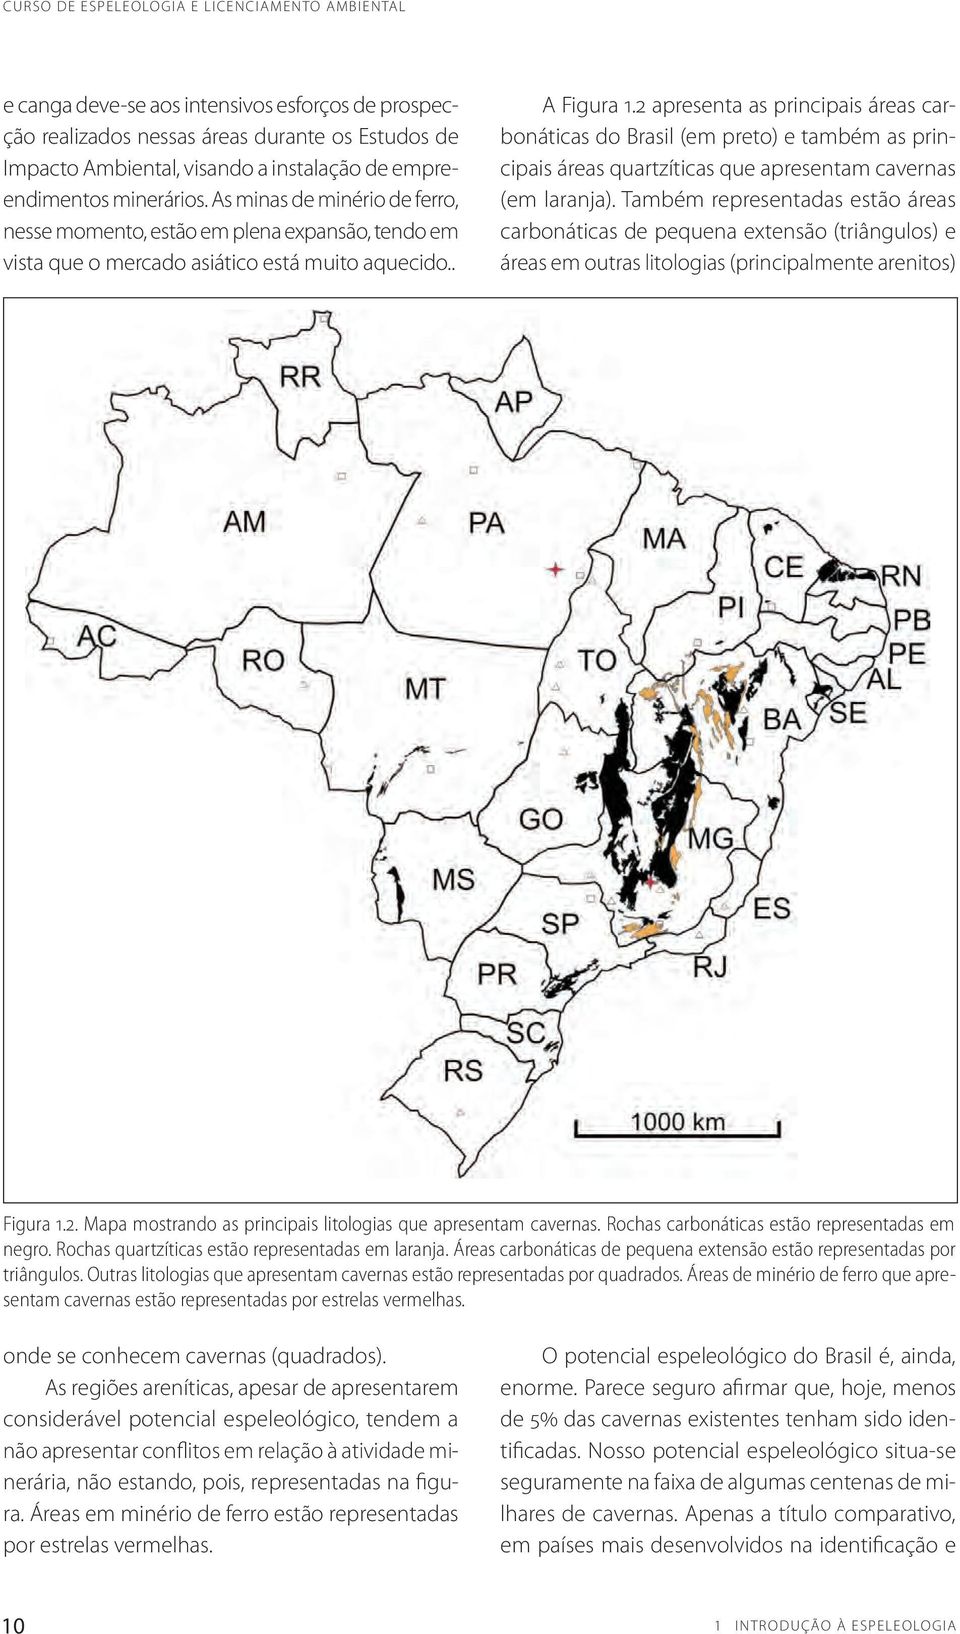 2 apresenta as principais áreas carbonáticas do Brasil (em preto) e também as principais áreas quartzíticas que apresentam cavernas (em laranja).